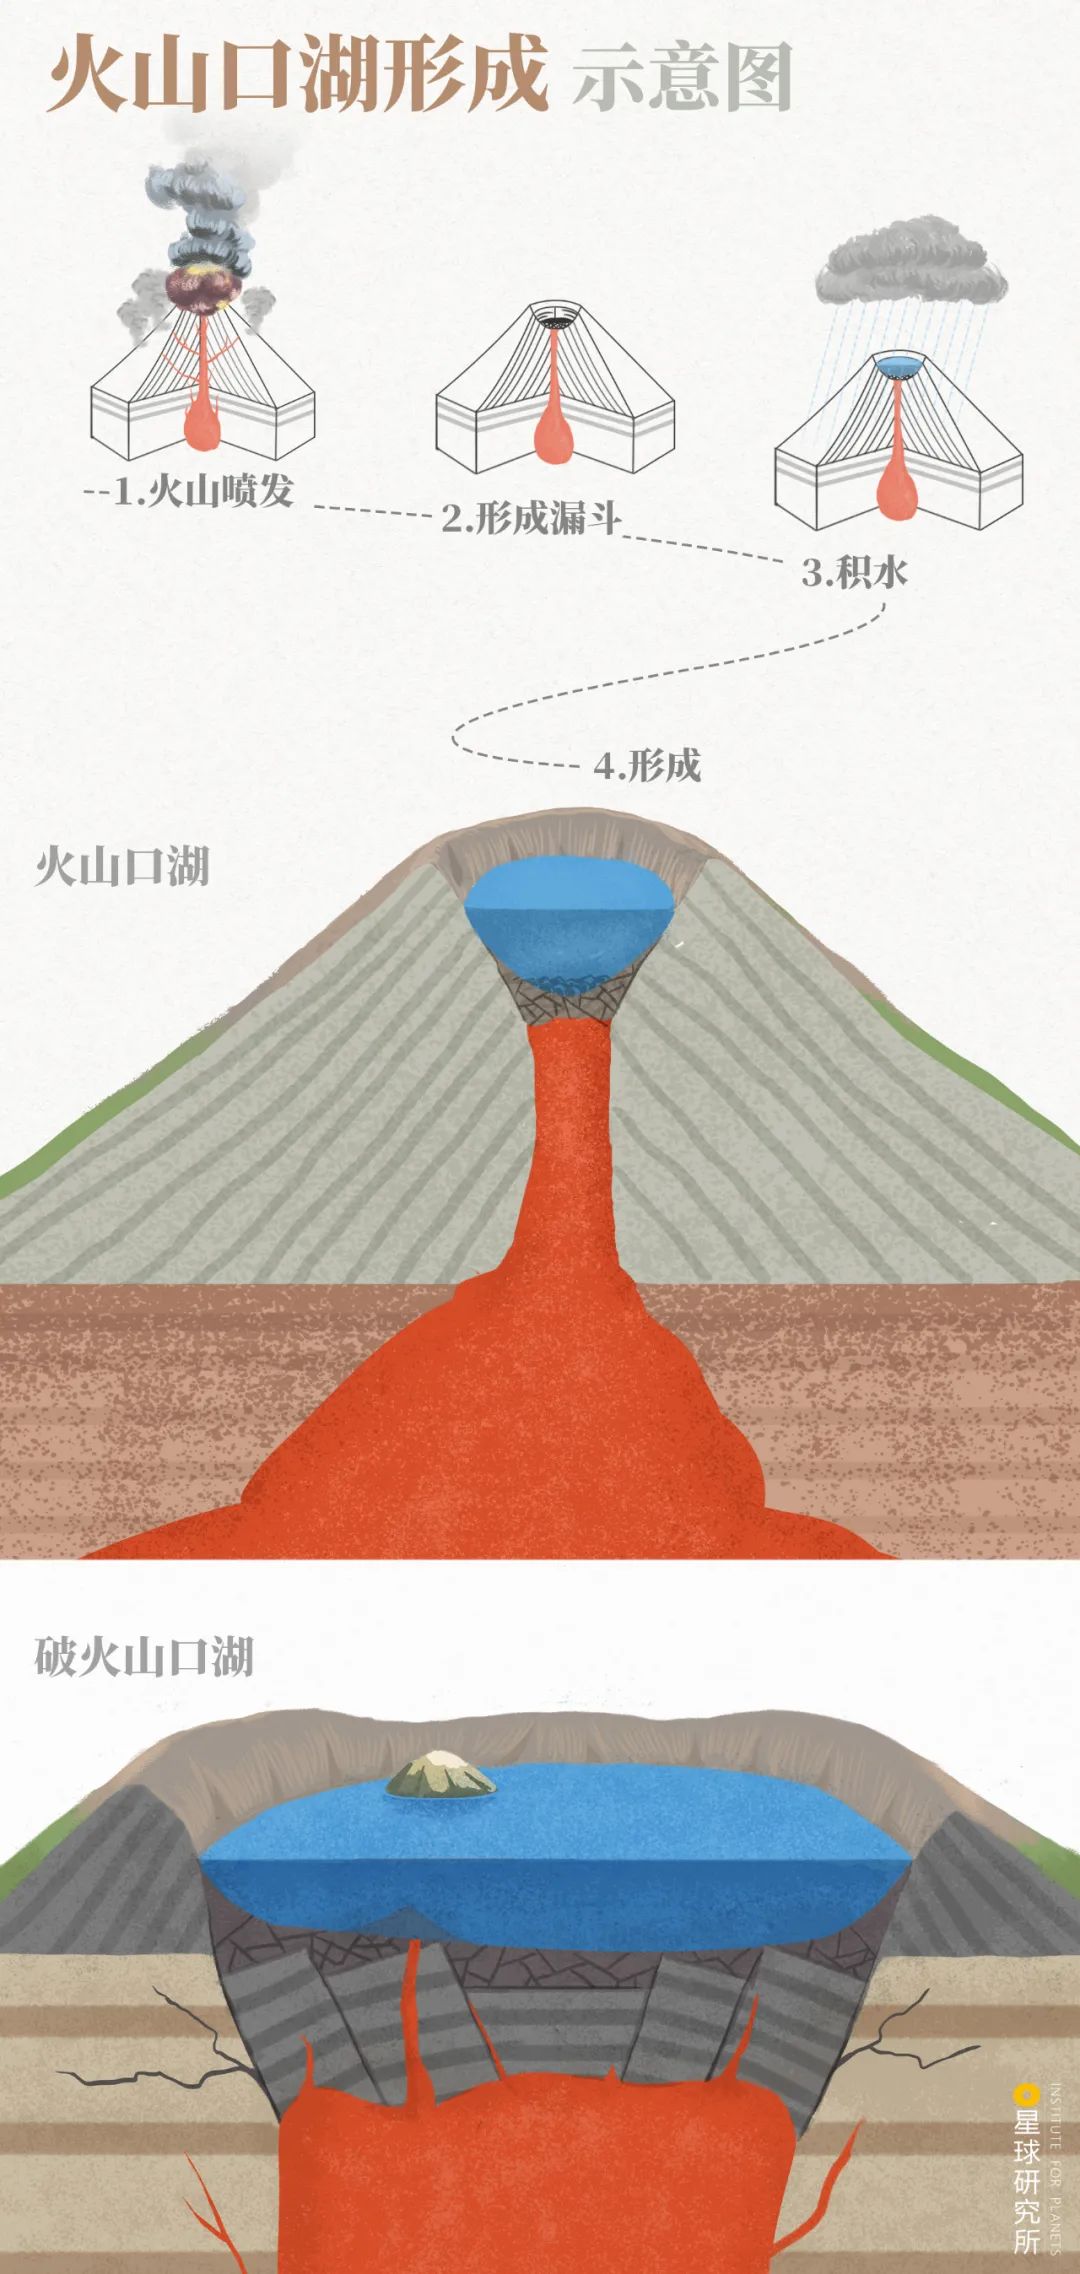 日本阿苏山火山喷发 火山灰如柱冲天